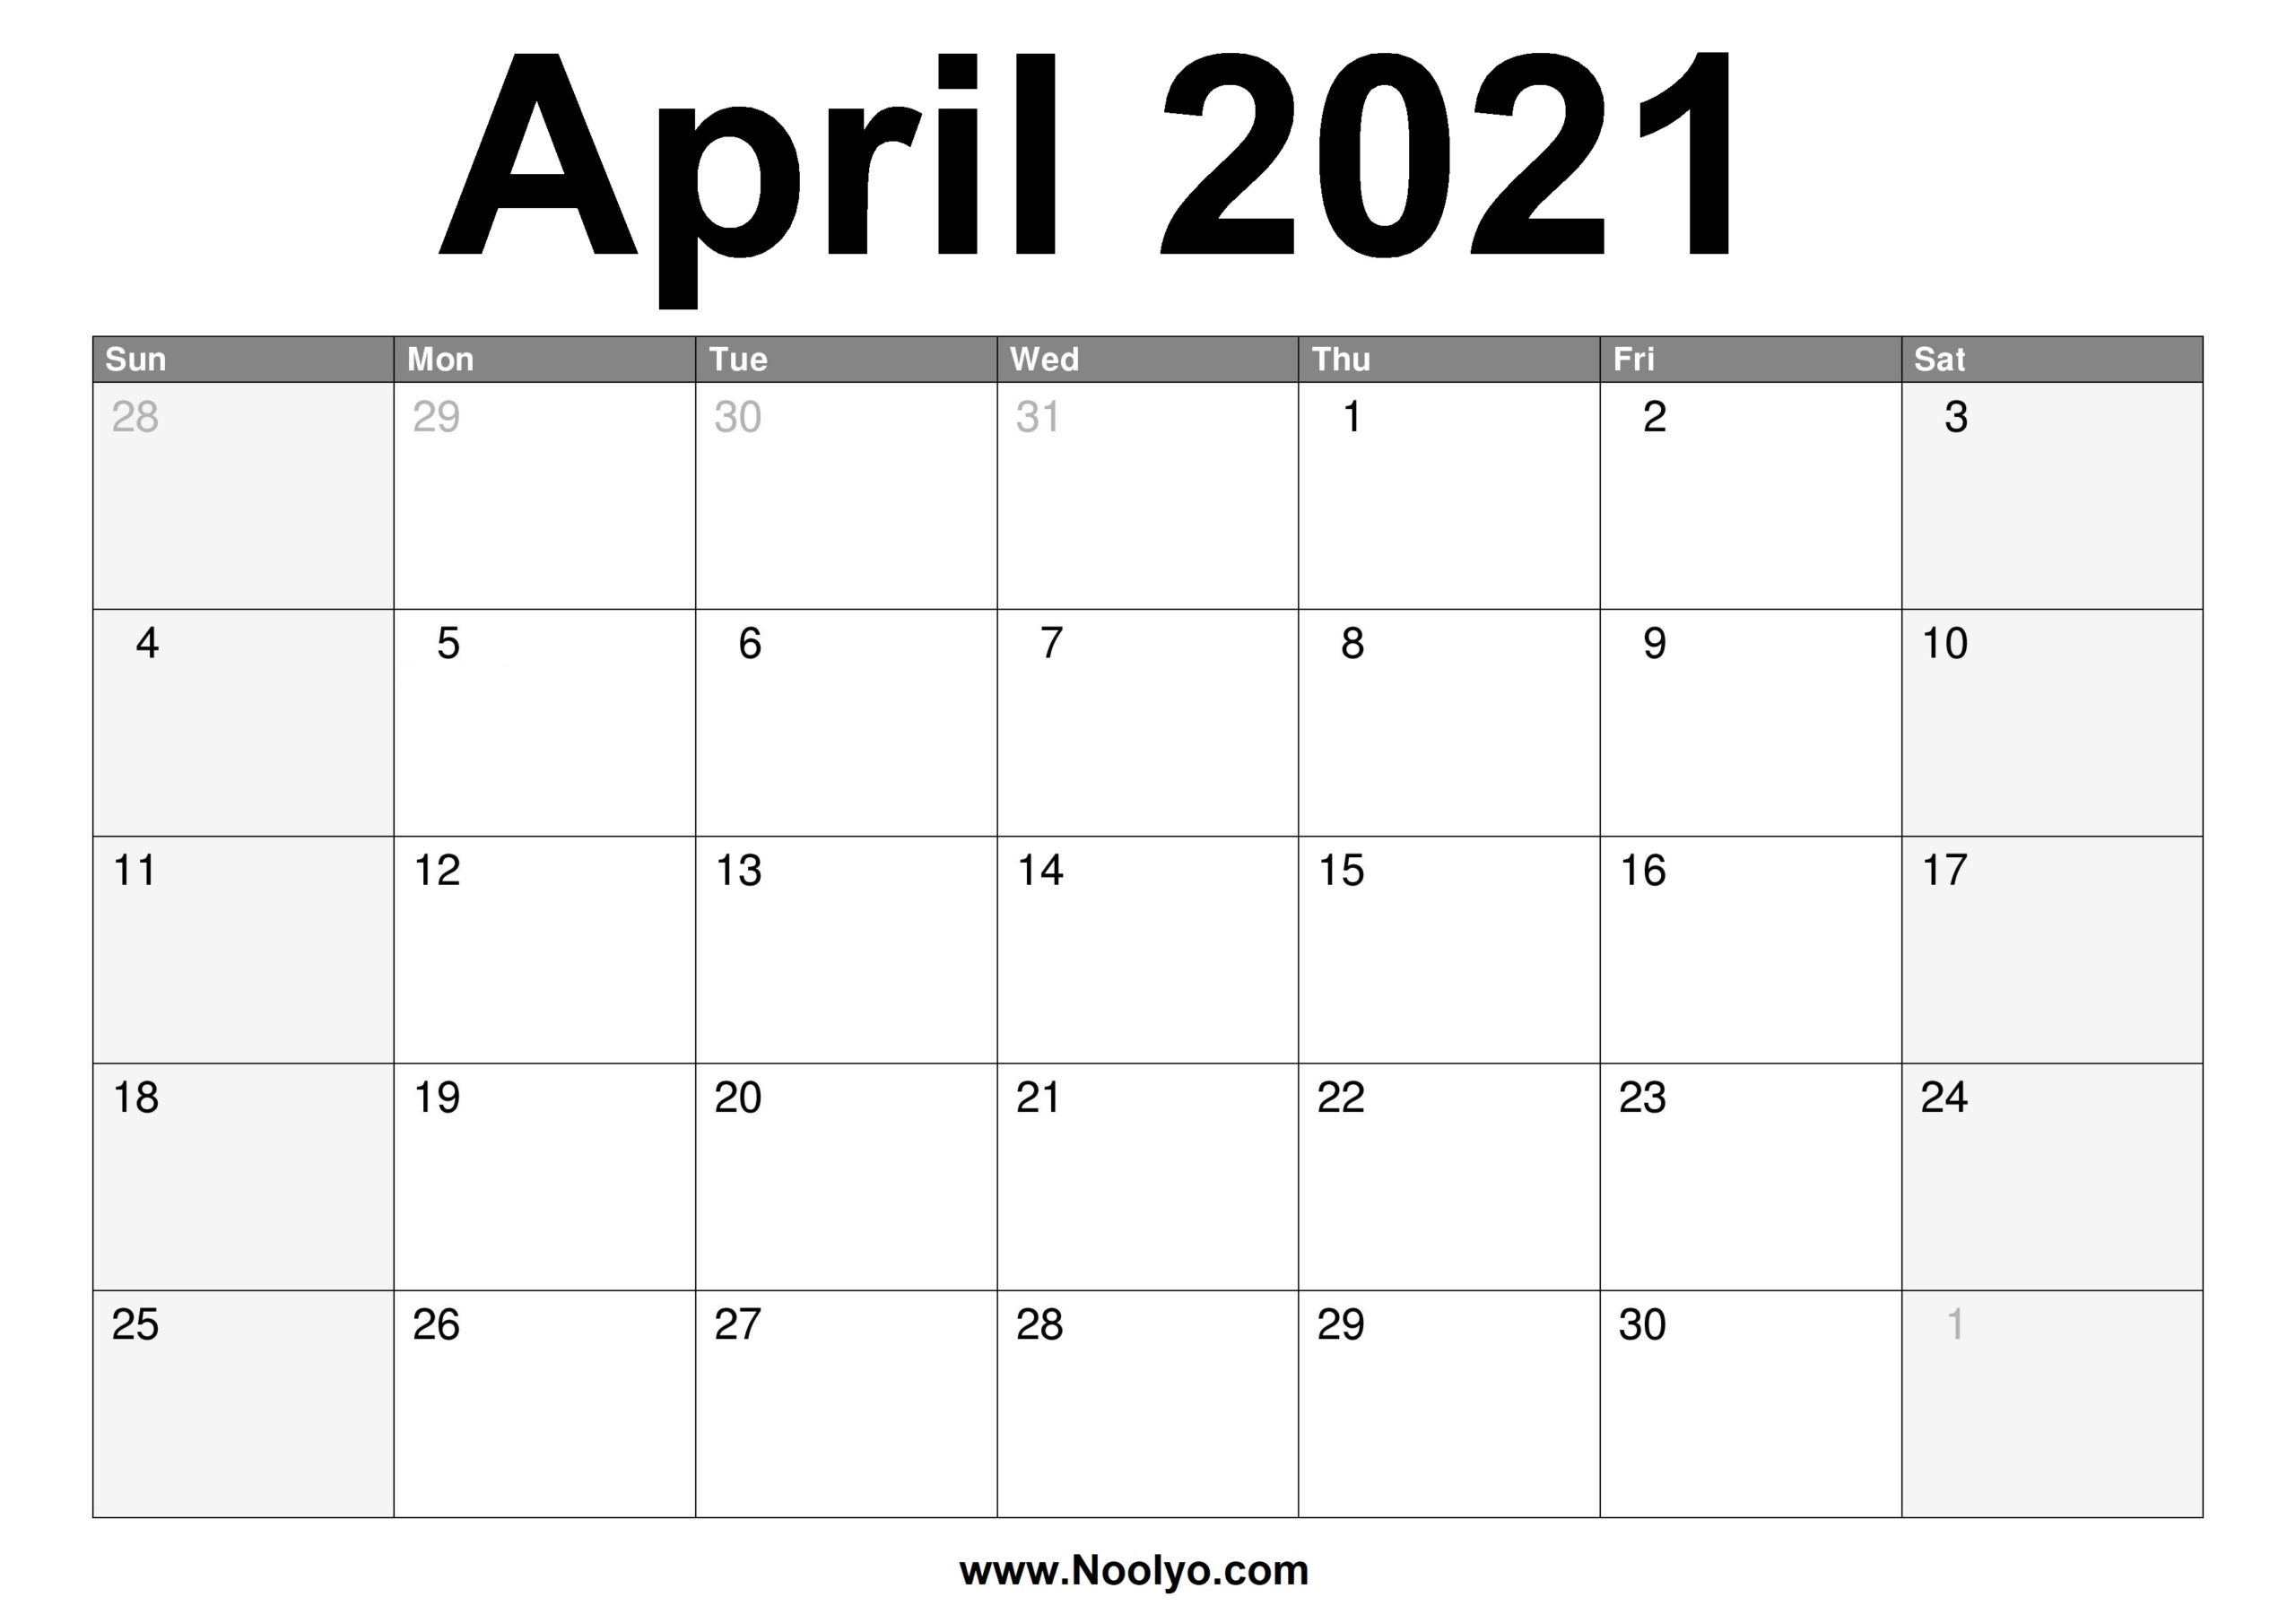 April 2021 Calendar Printable – Free Download